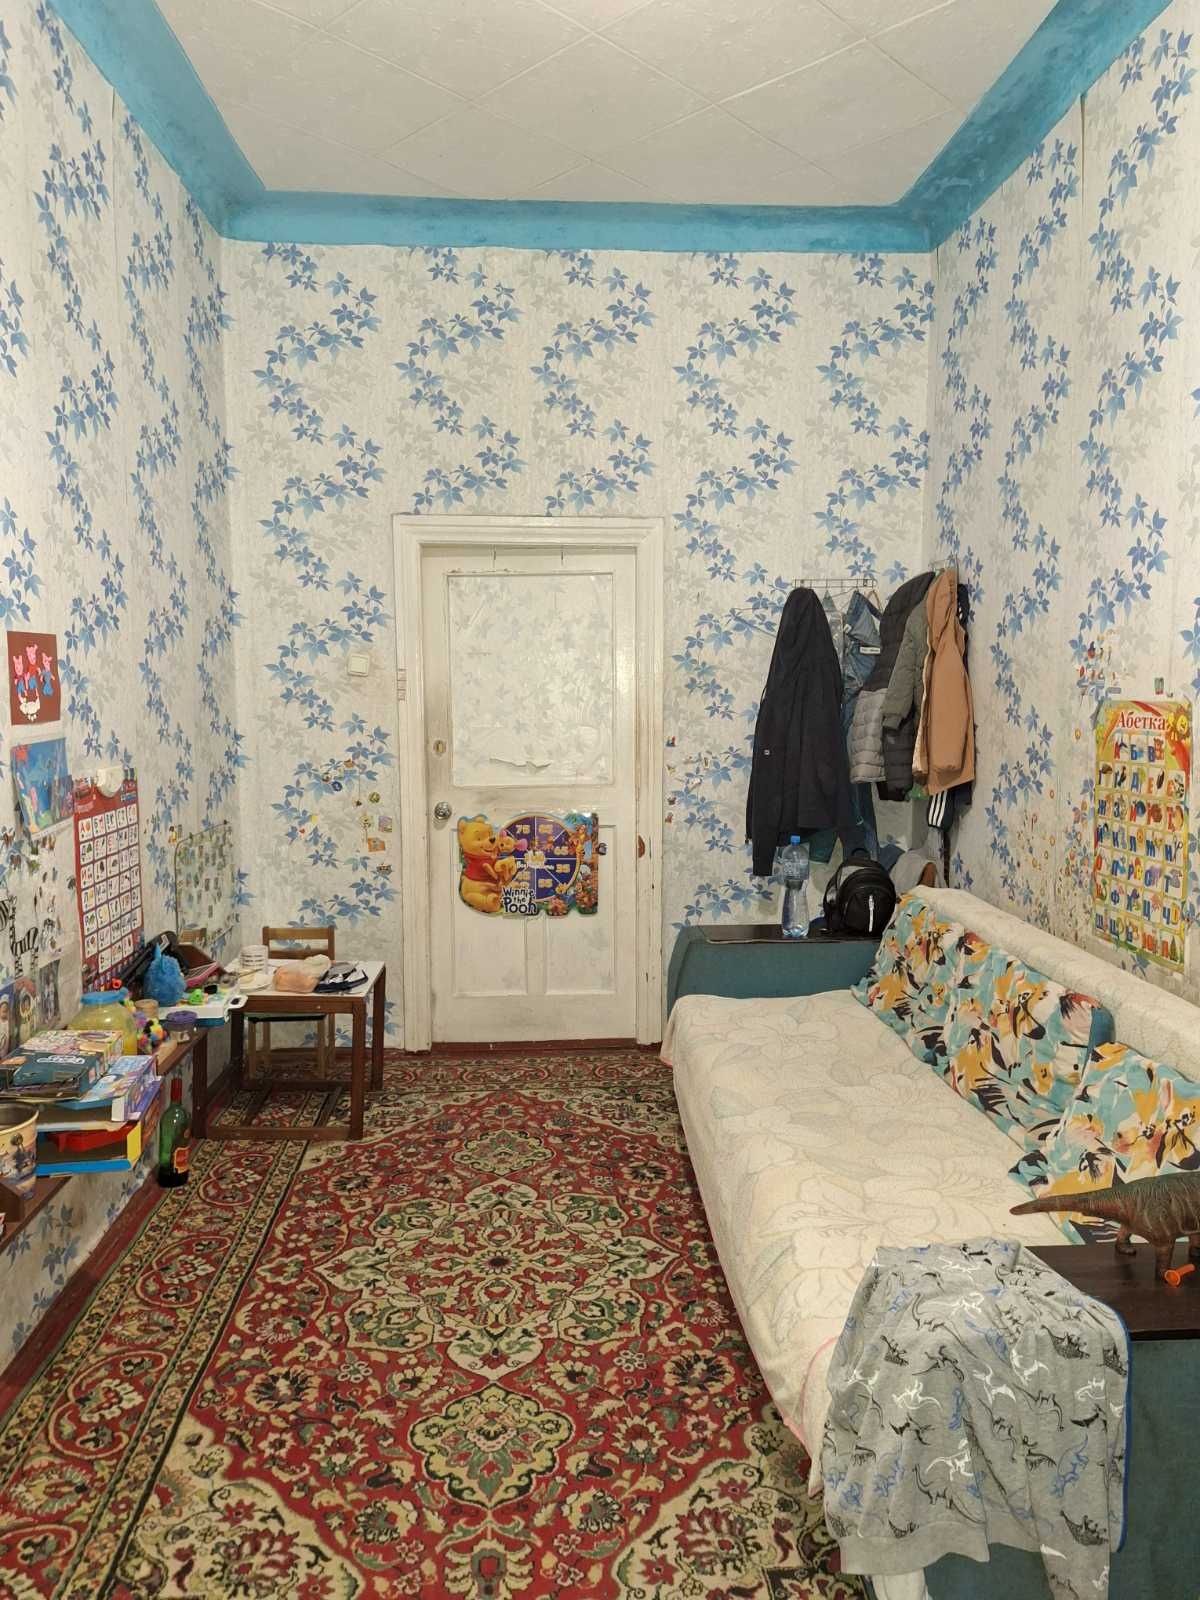 Продам квартиру 5ти кімнатна Сталінка